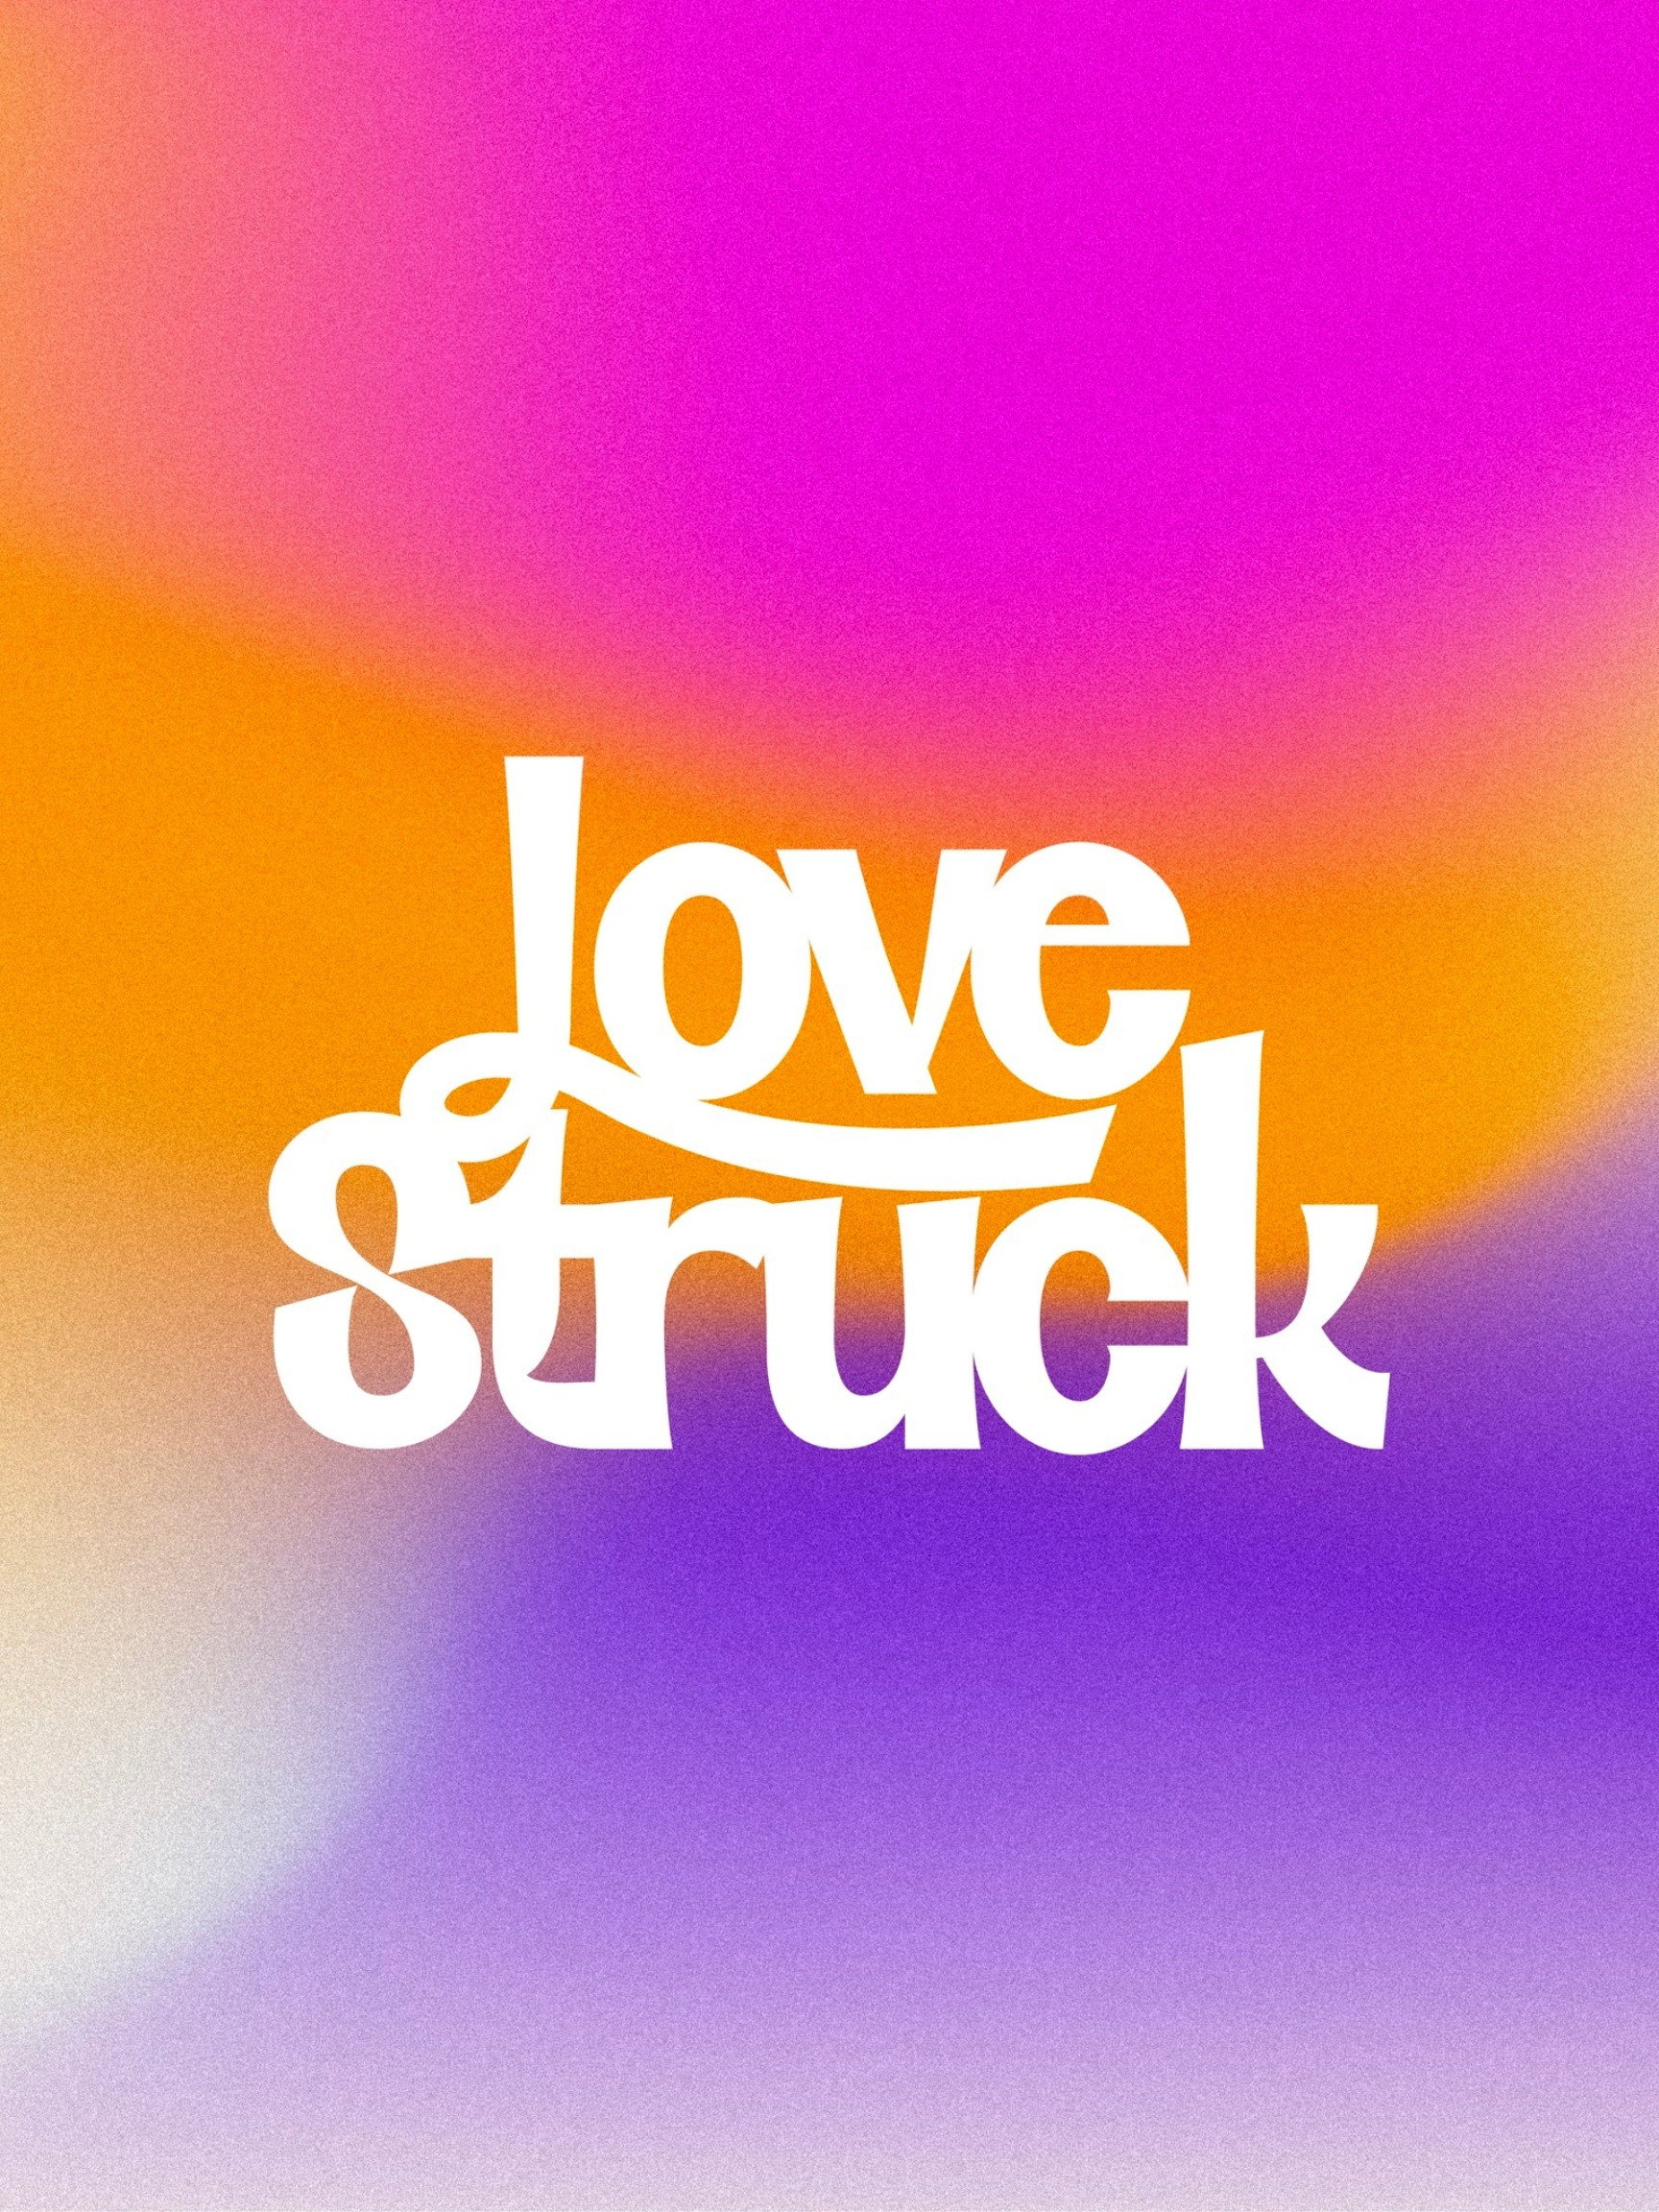 Lovestruck